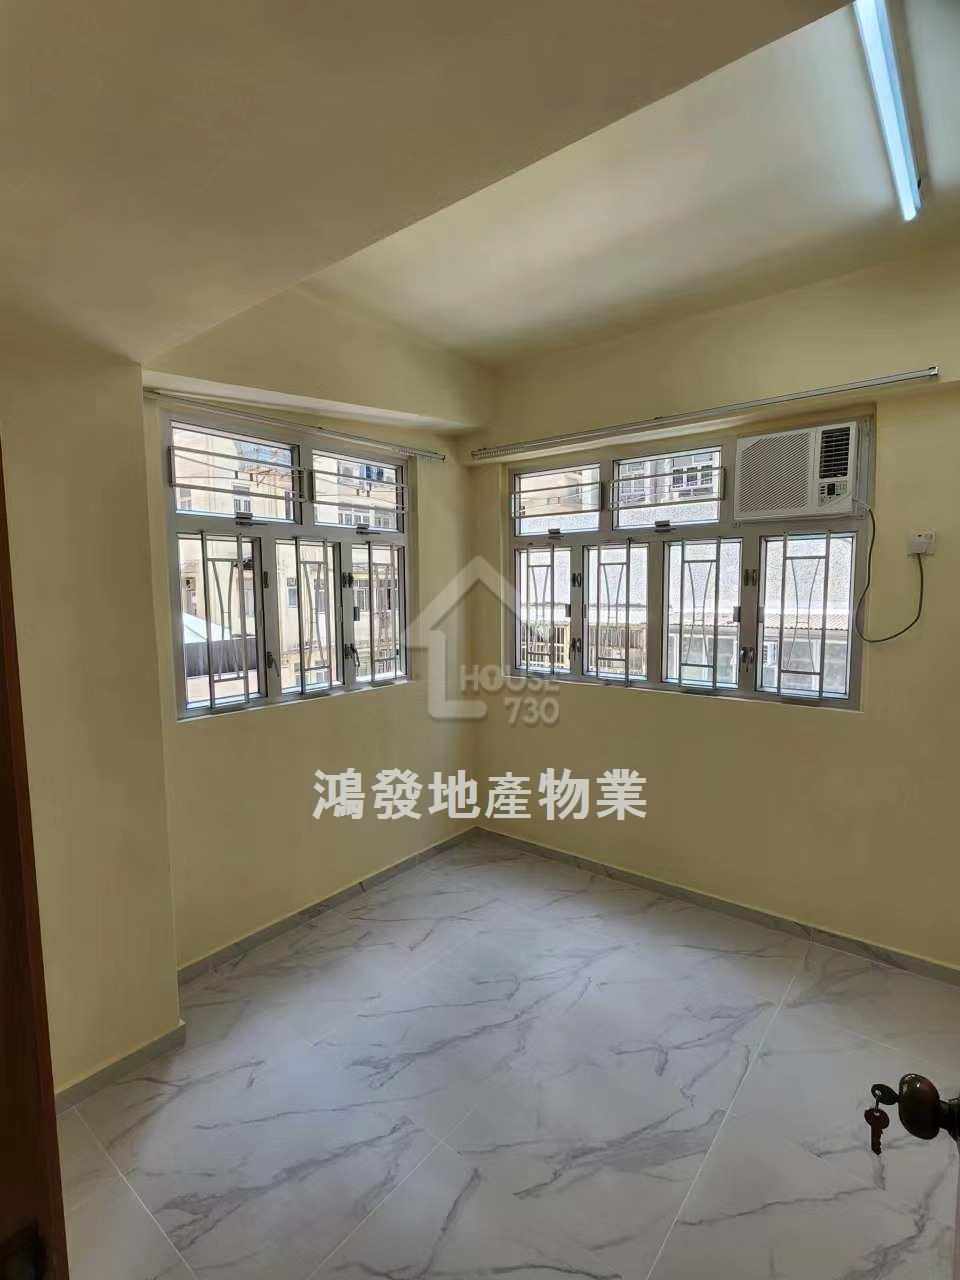 Sham Shui Po KA WUI BUILDING Lower Floor House730-7243439